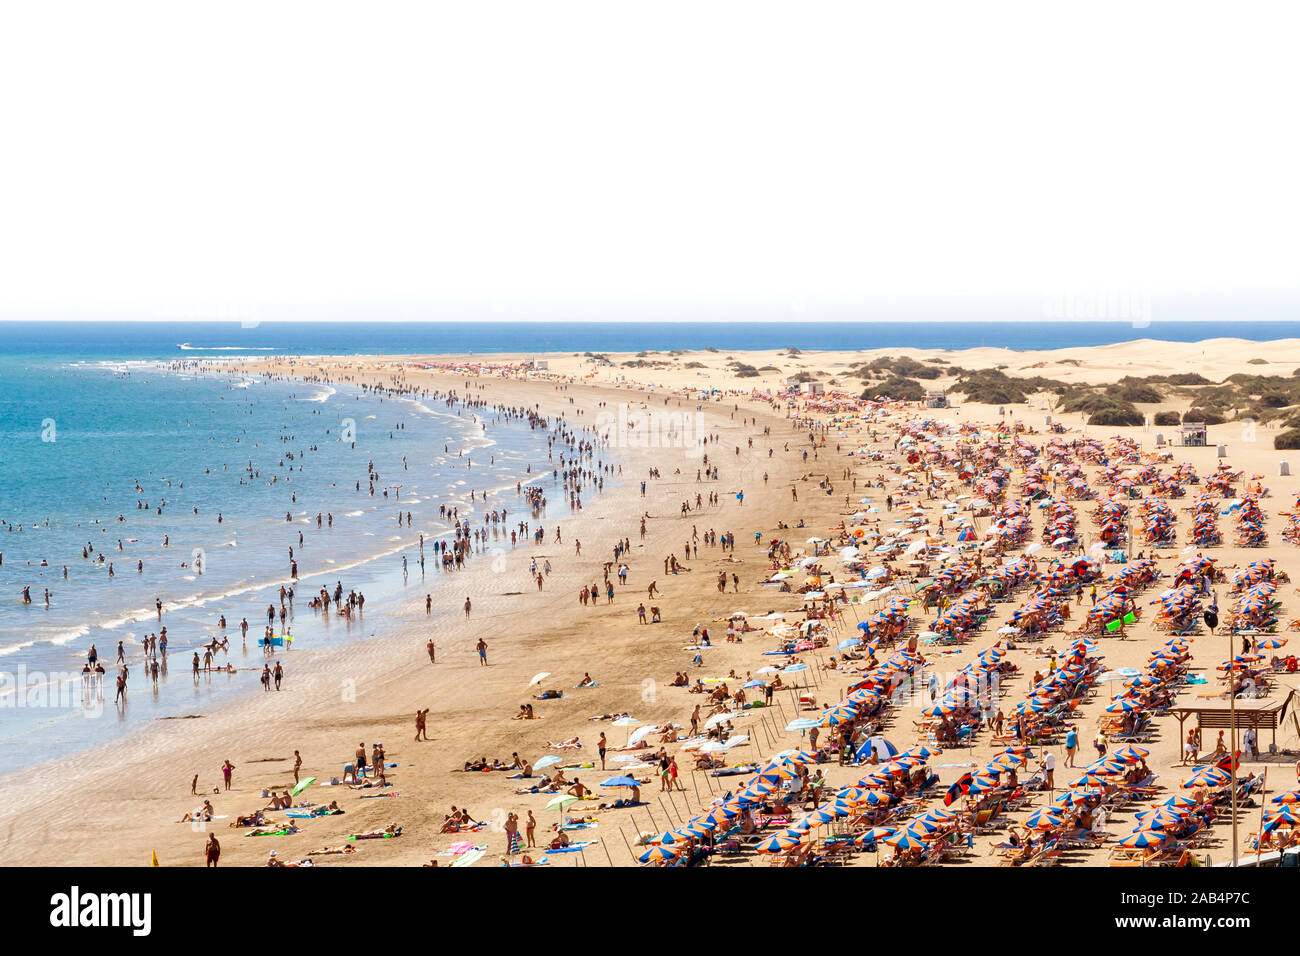 Eine Menge Leute in den berühmten Strand "Playa del Ingles' in Maspalomas, Kanarische Inseln. Weißen Himmel Hintergrund für Text. Stockfoto